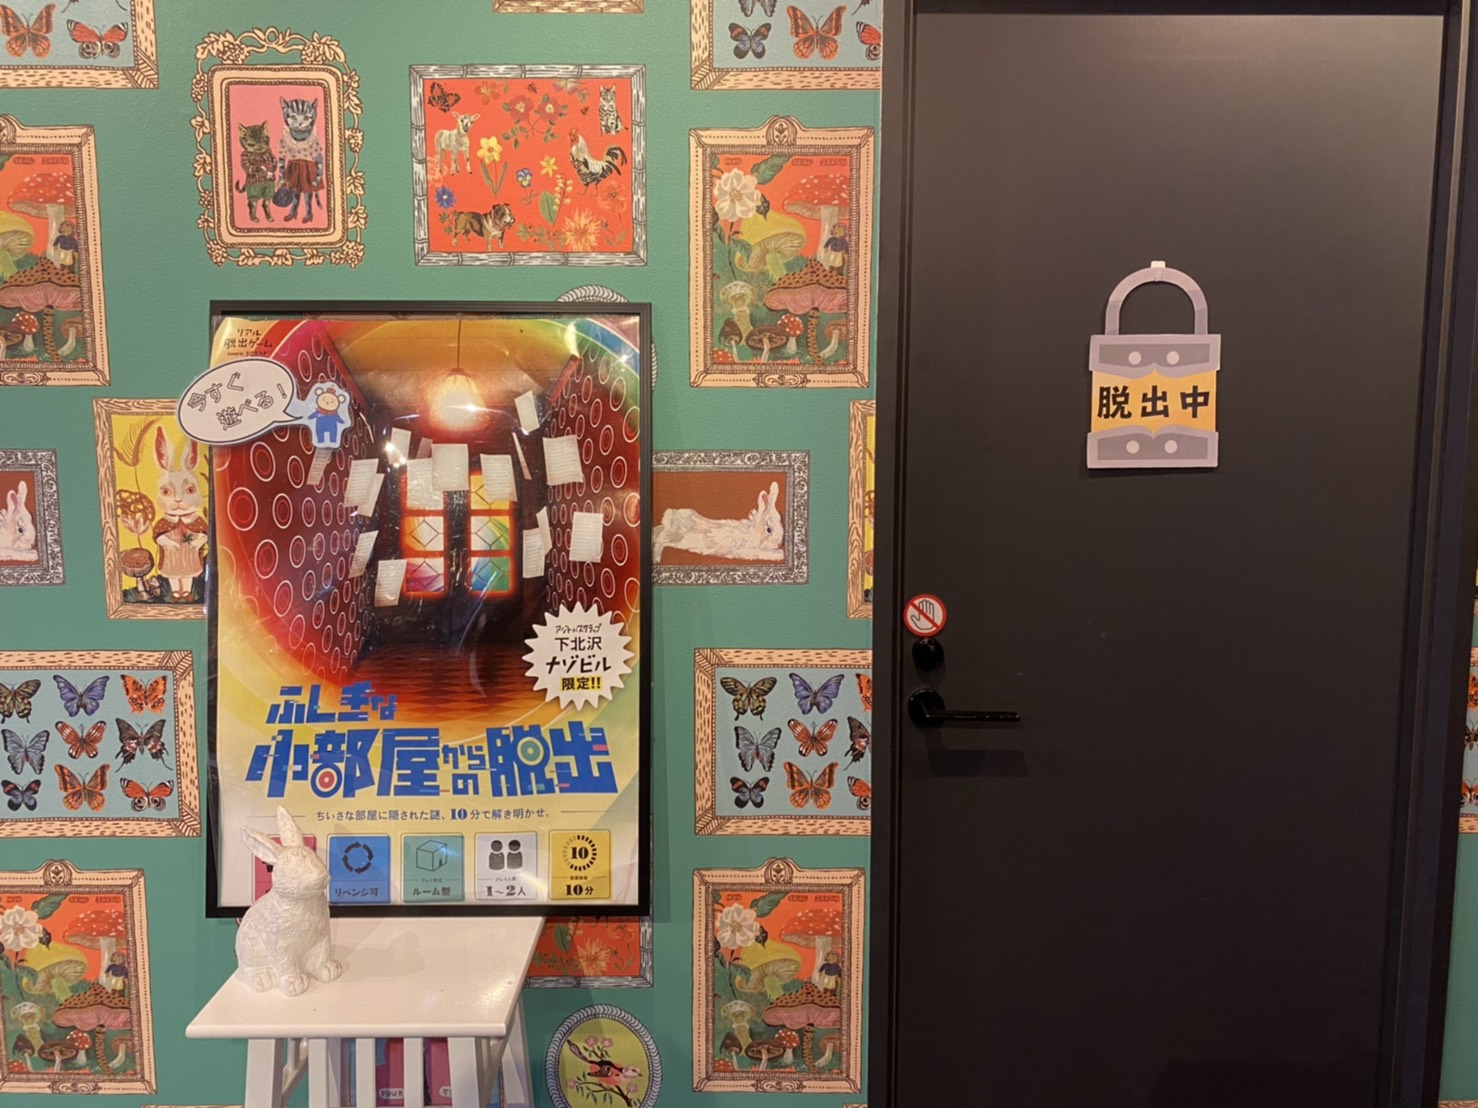 O. リアル脱出ゲーム下北沢店<br>カレーマップ提示で「ふしぎな小部屋からの脱出」